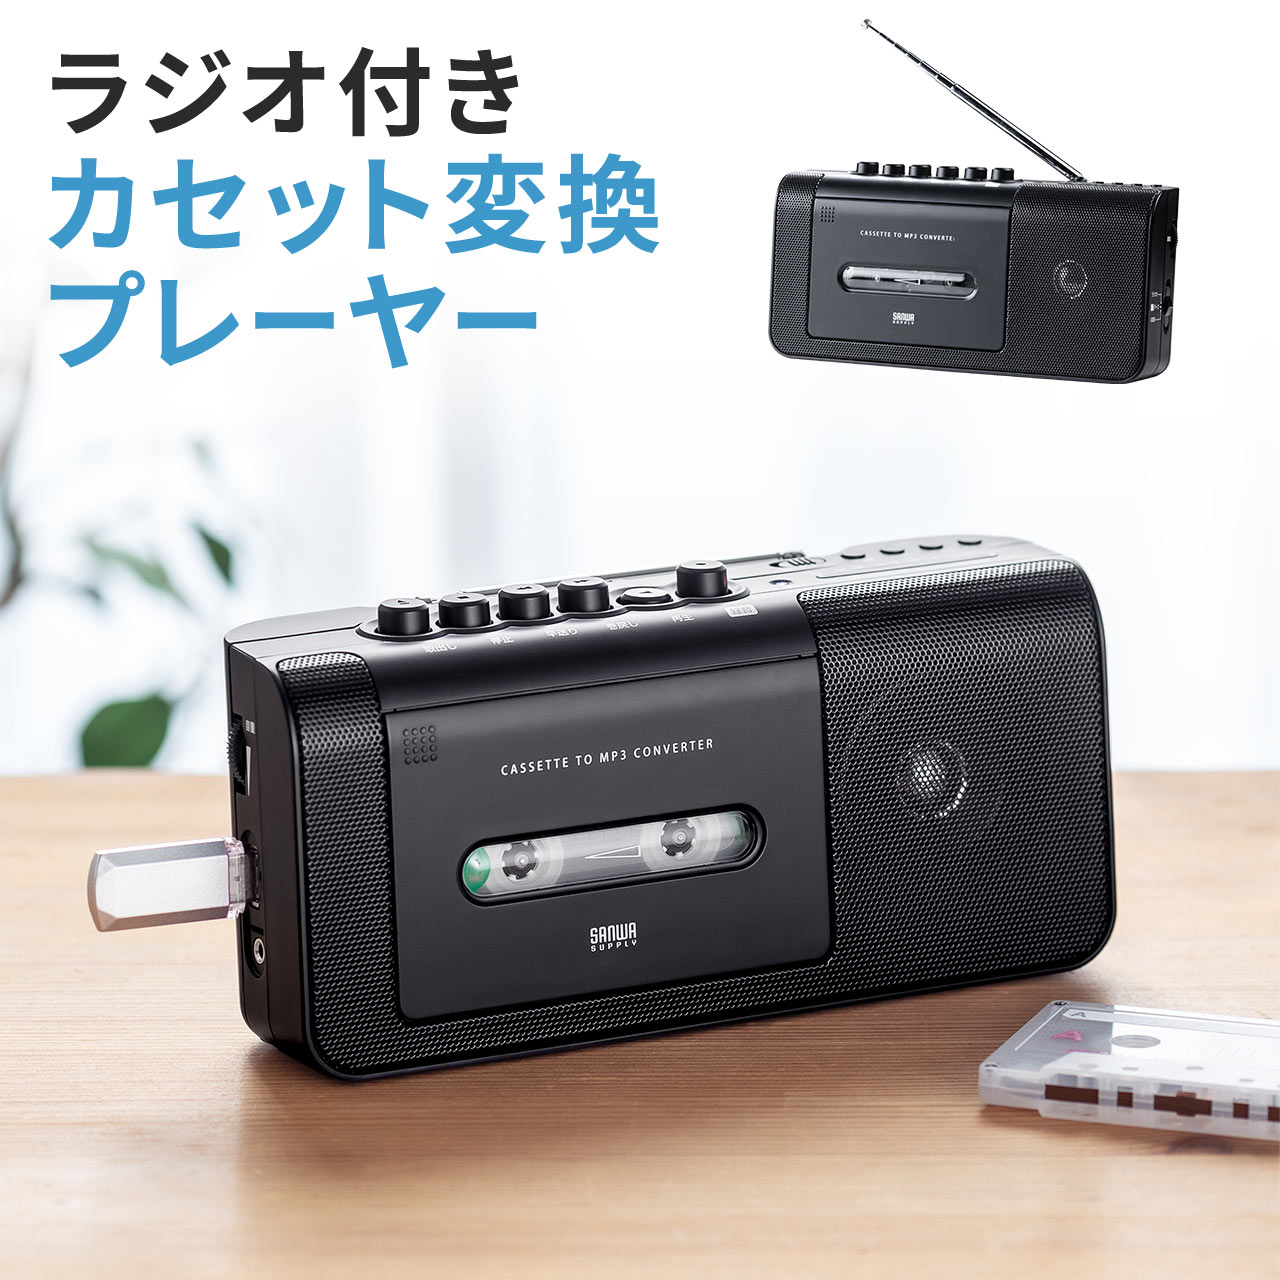 サンワダイレクト カセットテープ デジタル化 USB保存 簡単操作3ステップ カセットプレーヤー マイク内蔵(録音可能) 乾電池/コンセント 400-MEDI033